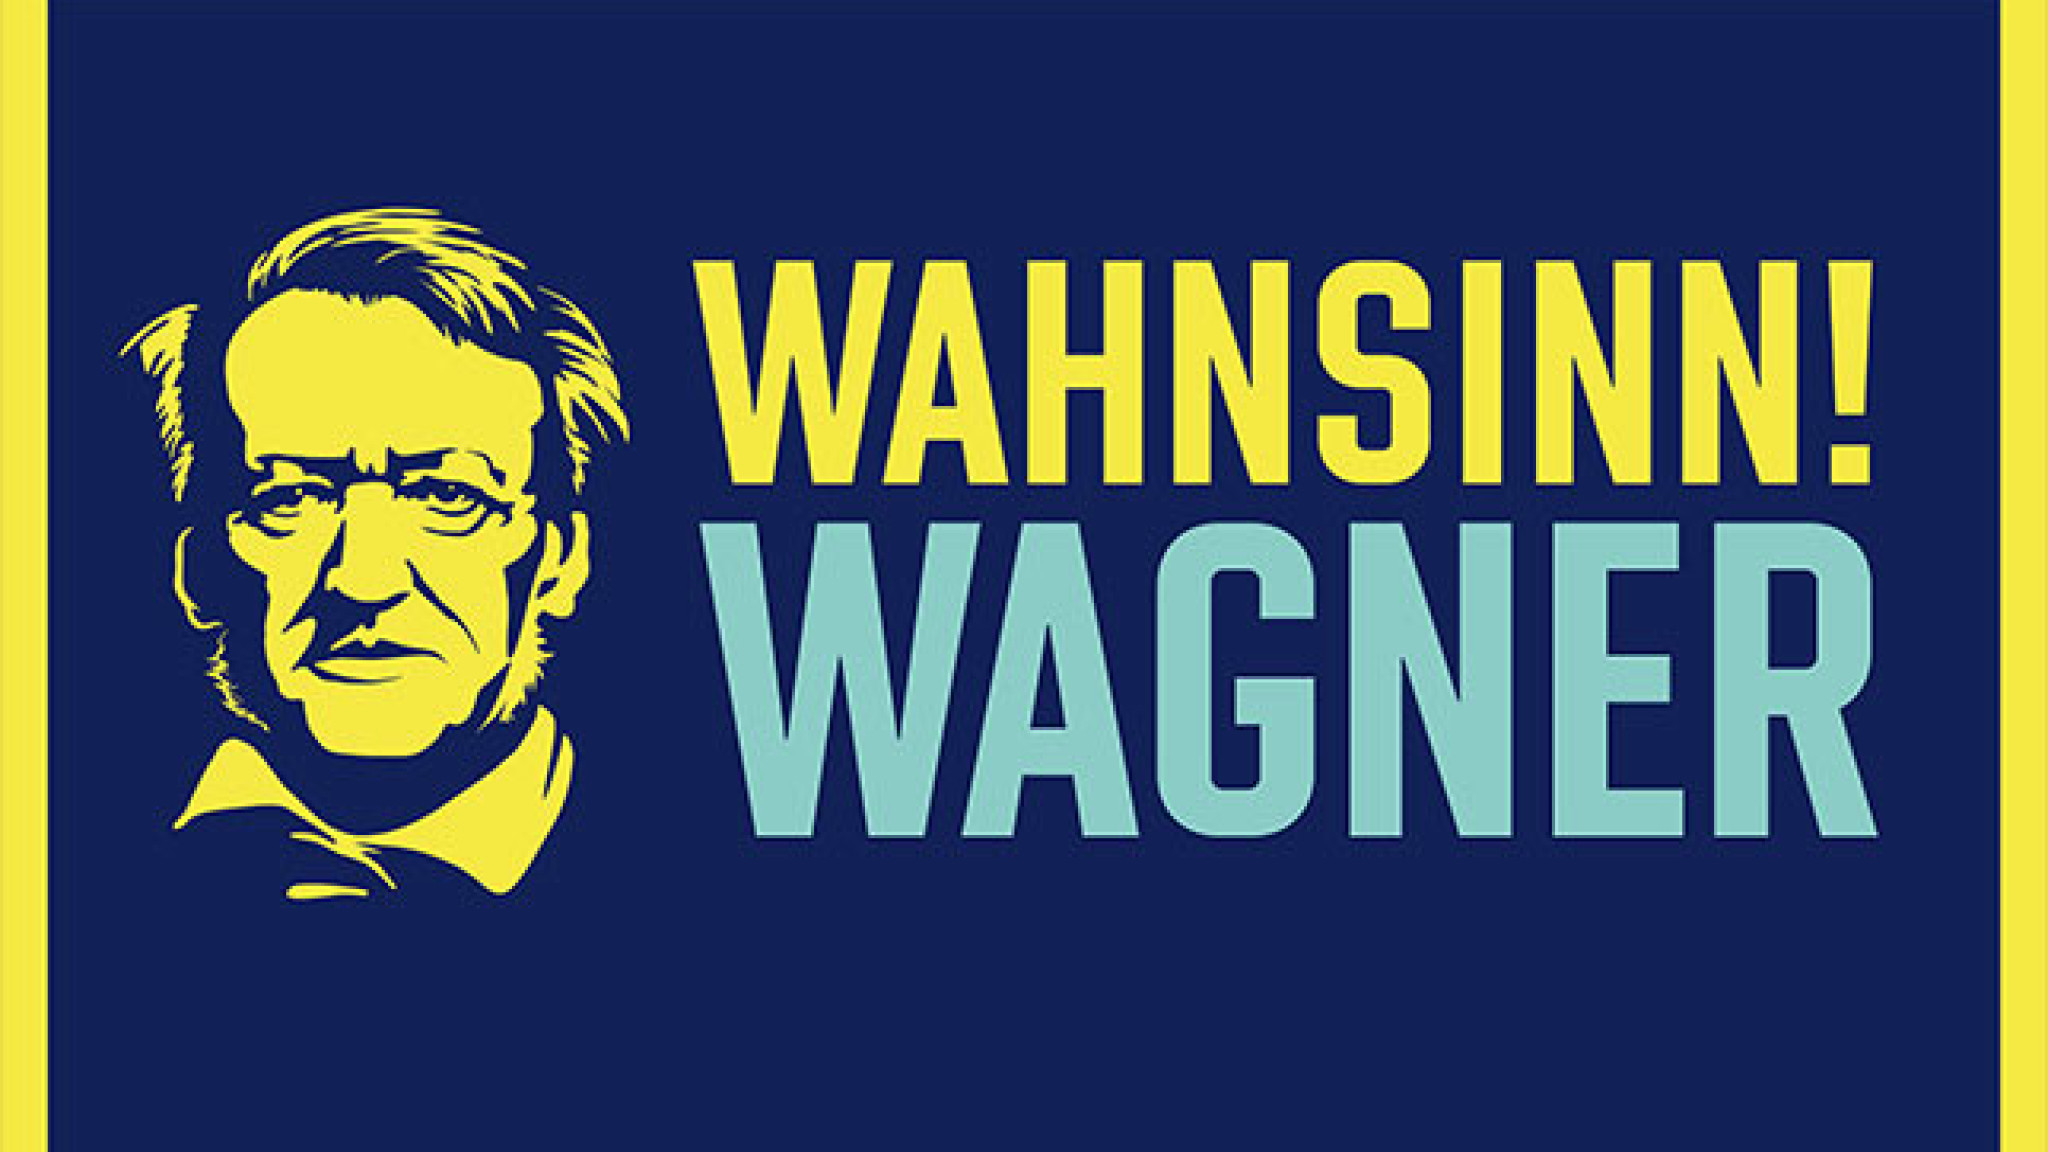 Wahnsinn! Wagner